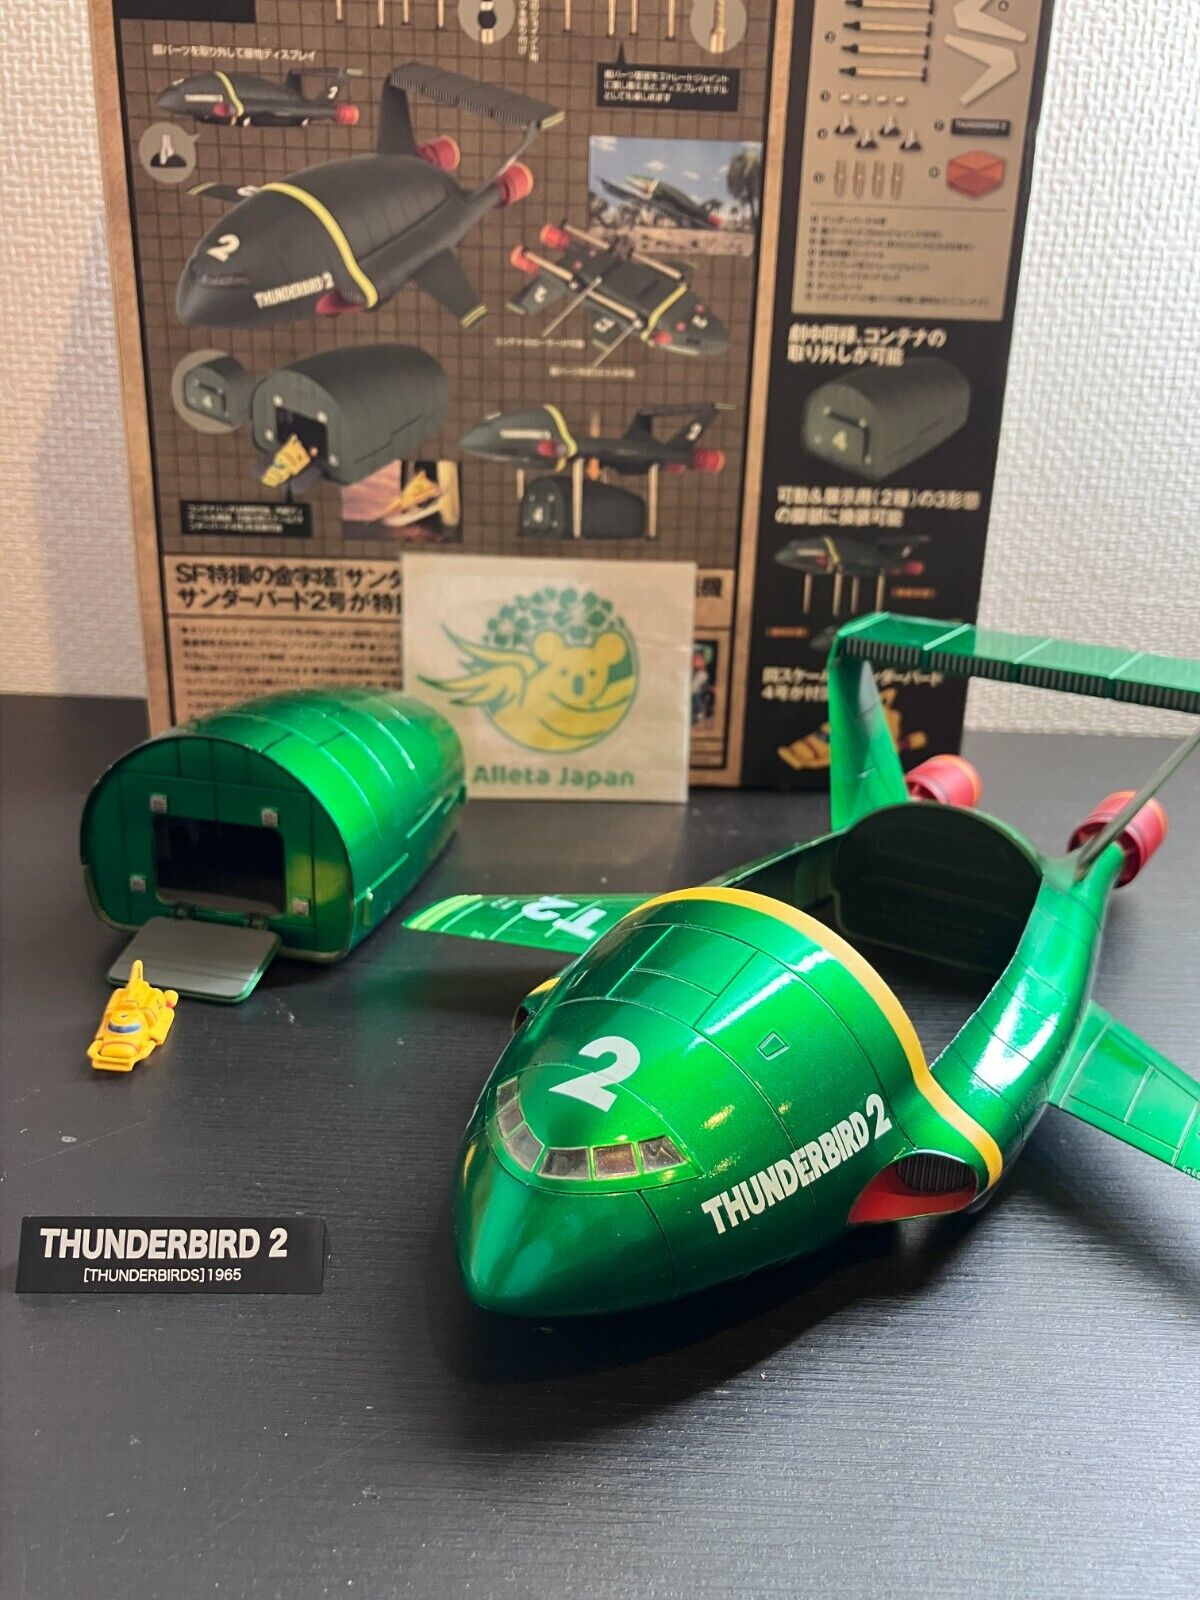 Thunderbird 2 Metallic Color 21㎜ Kaiyodo Figure Tokusatsu Revoltech No 044EX Toy